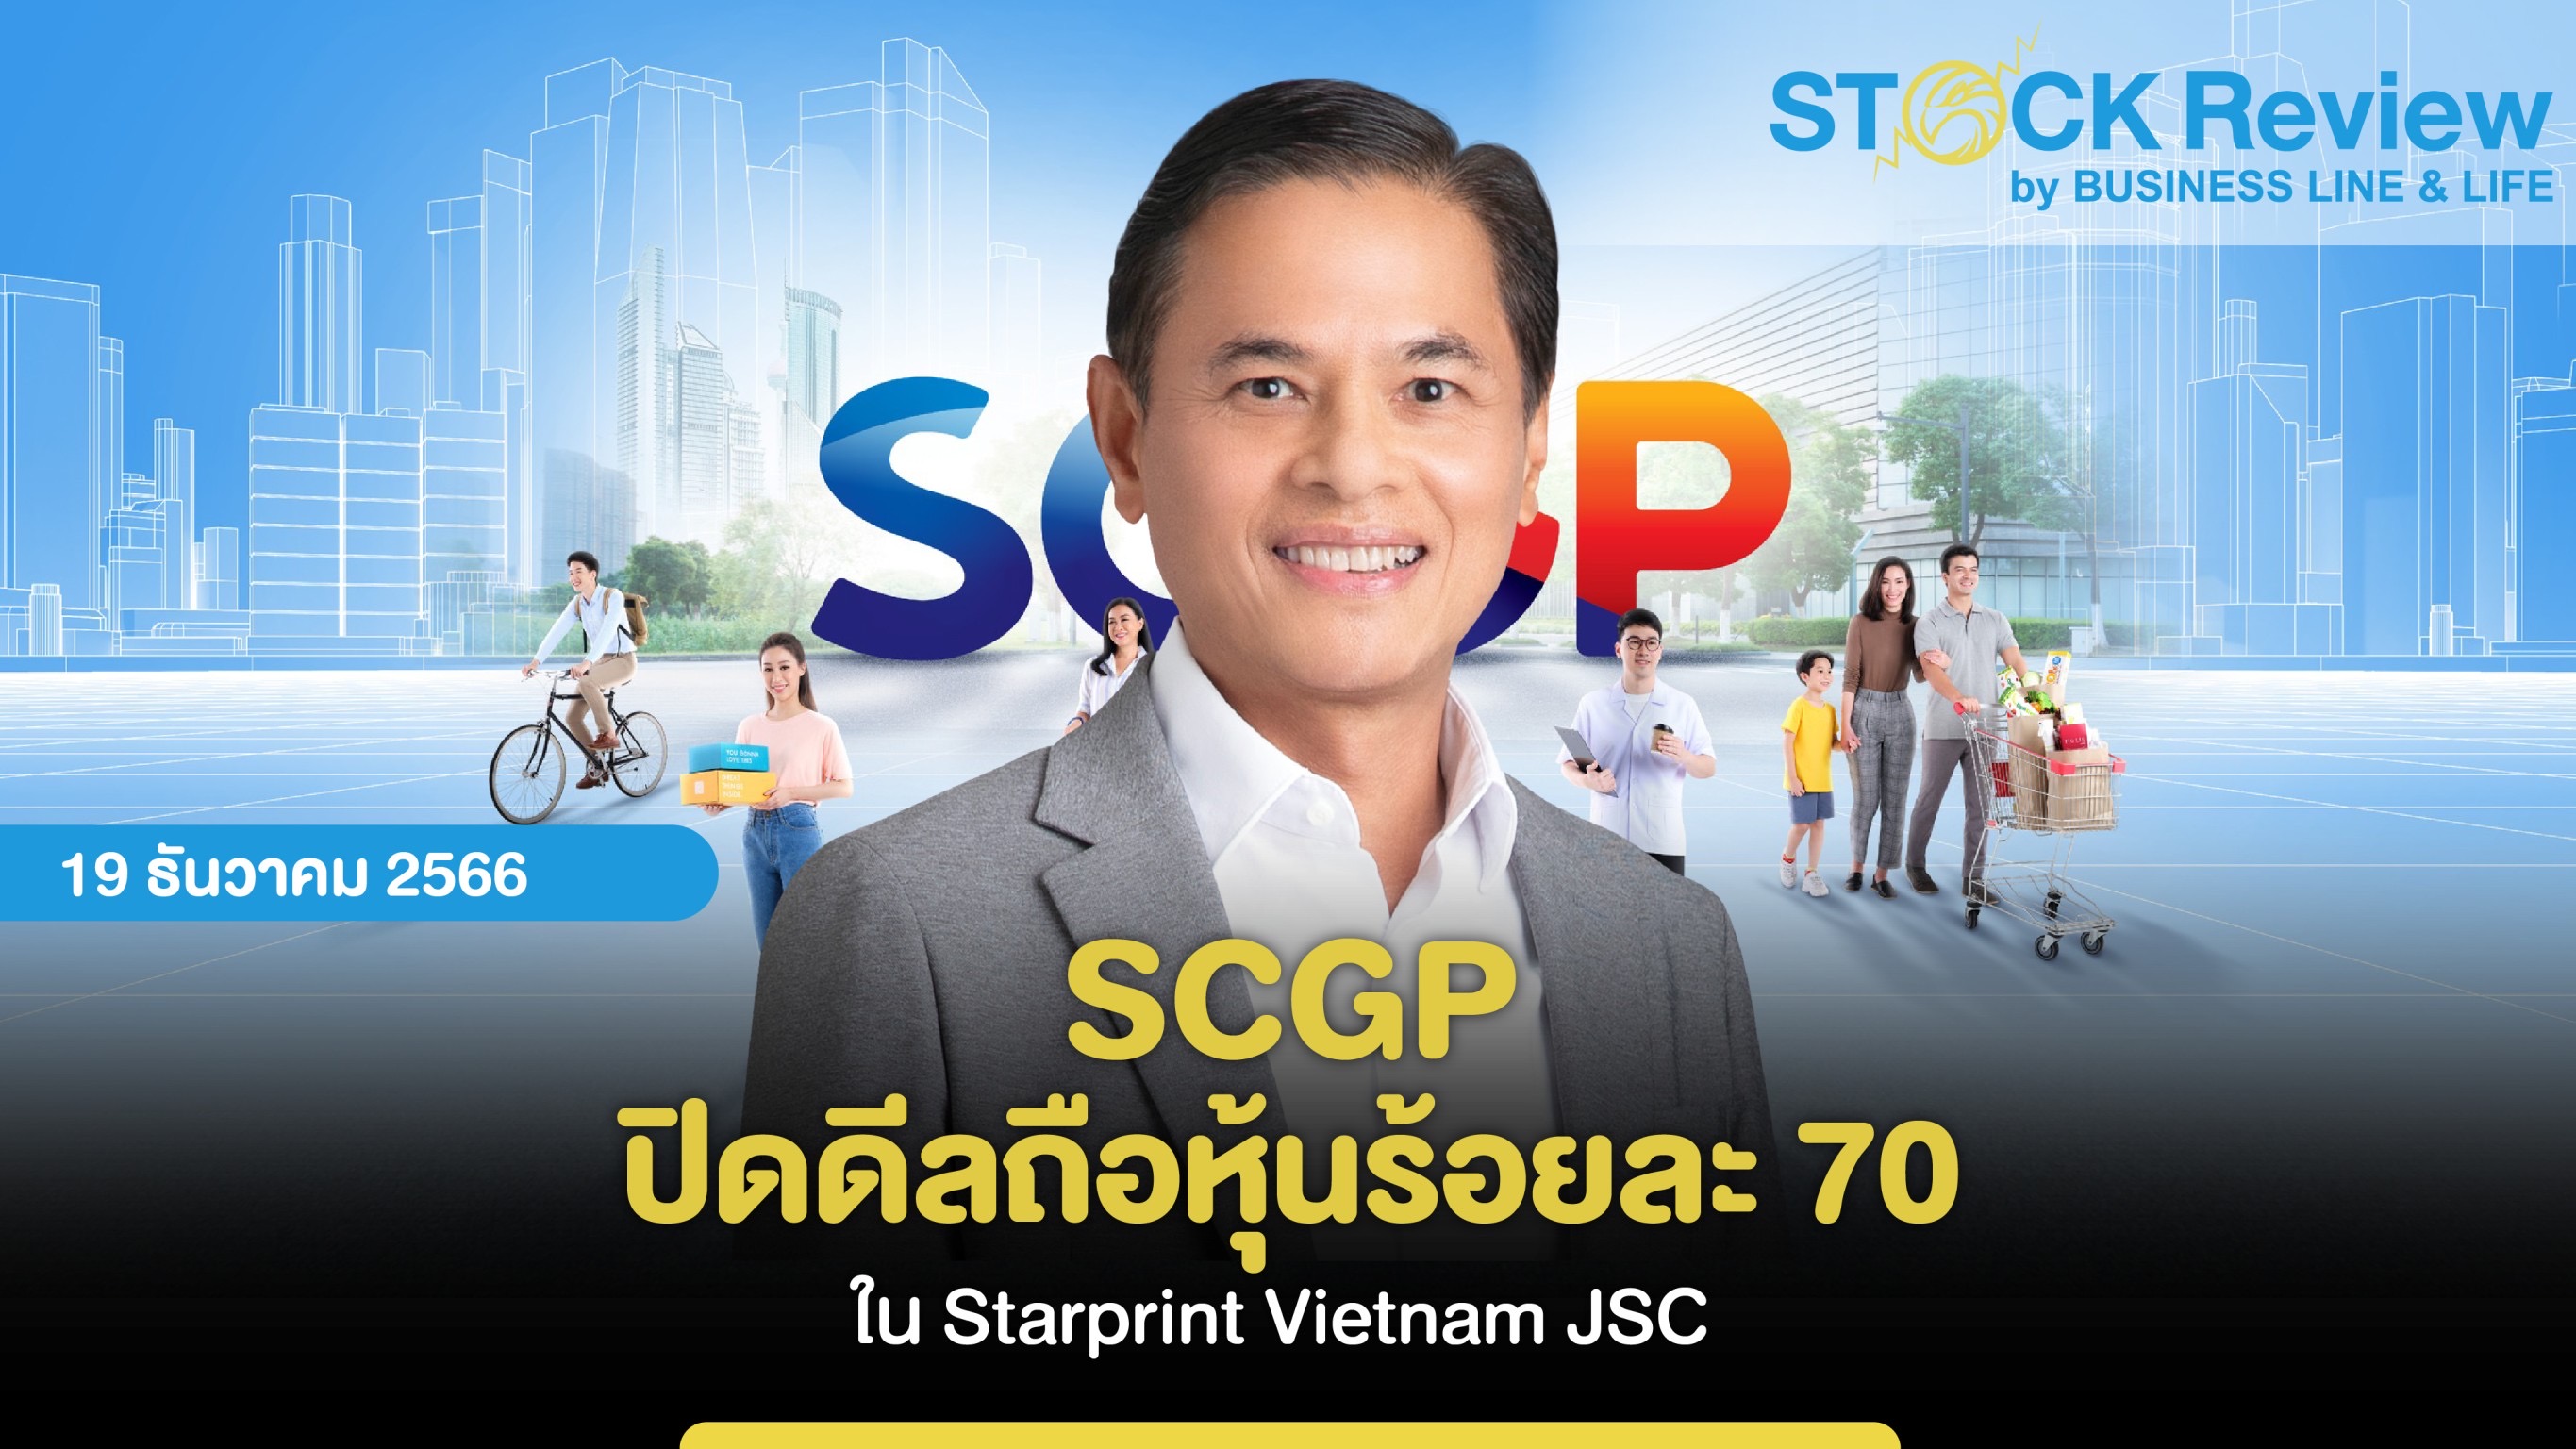 SCGP ปิดดีลถือหุ้นร้อยละ 70 ใน Starprint Vietnam JSC  รุกบรรจุภัณฑ์กระดาษพรีเมียมคุณภาพสูงในอาเซียน